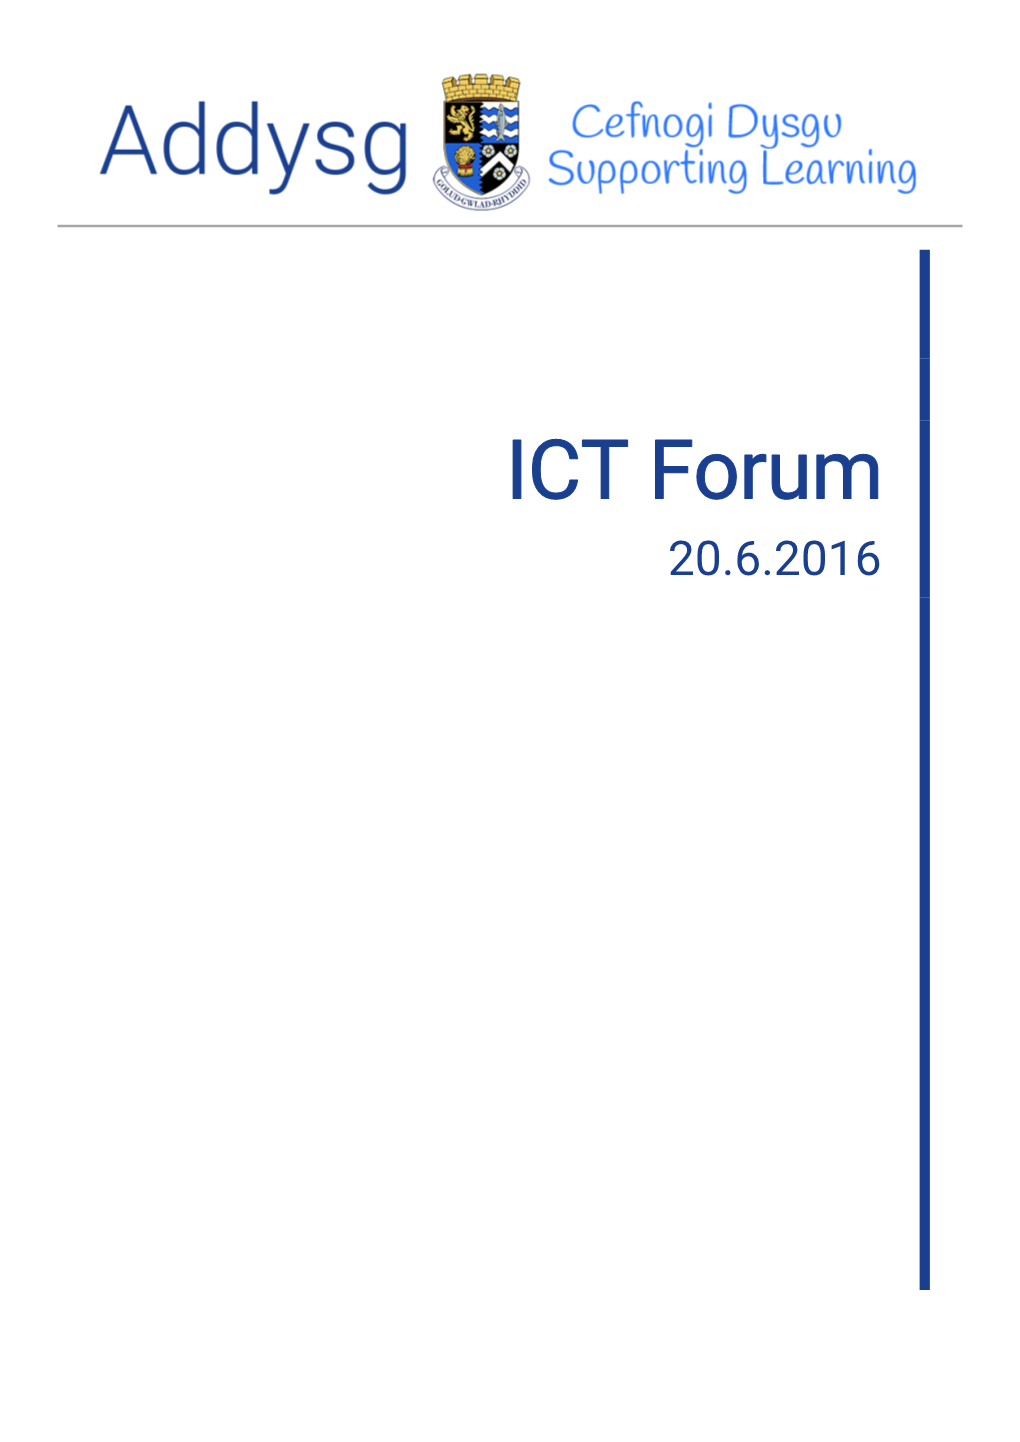 ICT Forum 20.6.2016